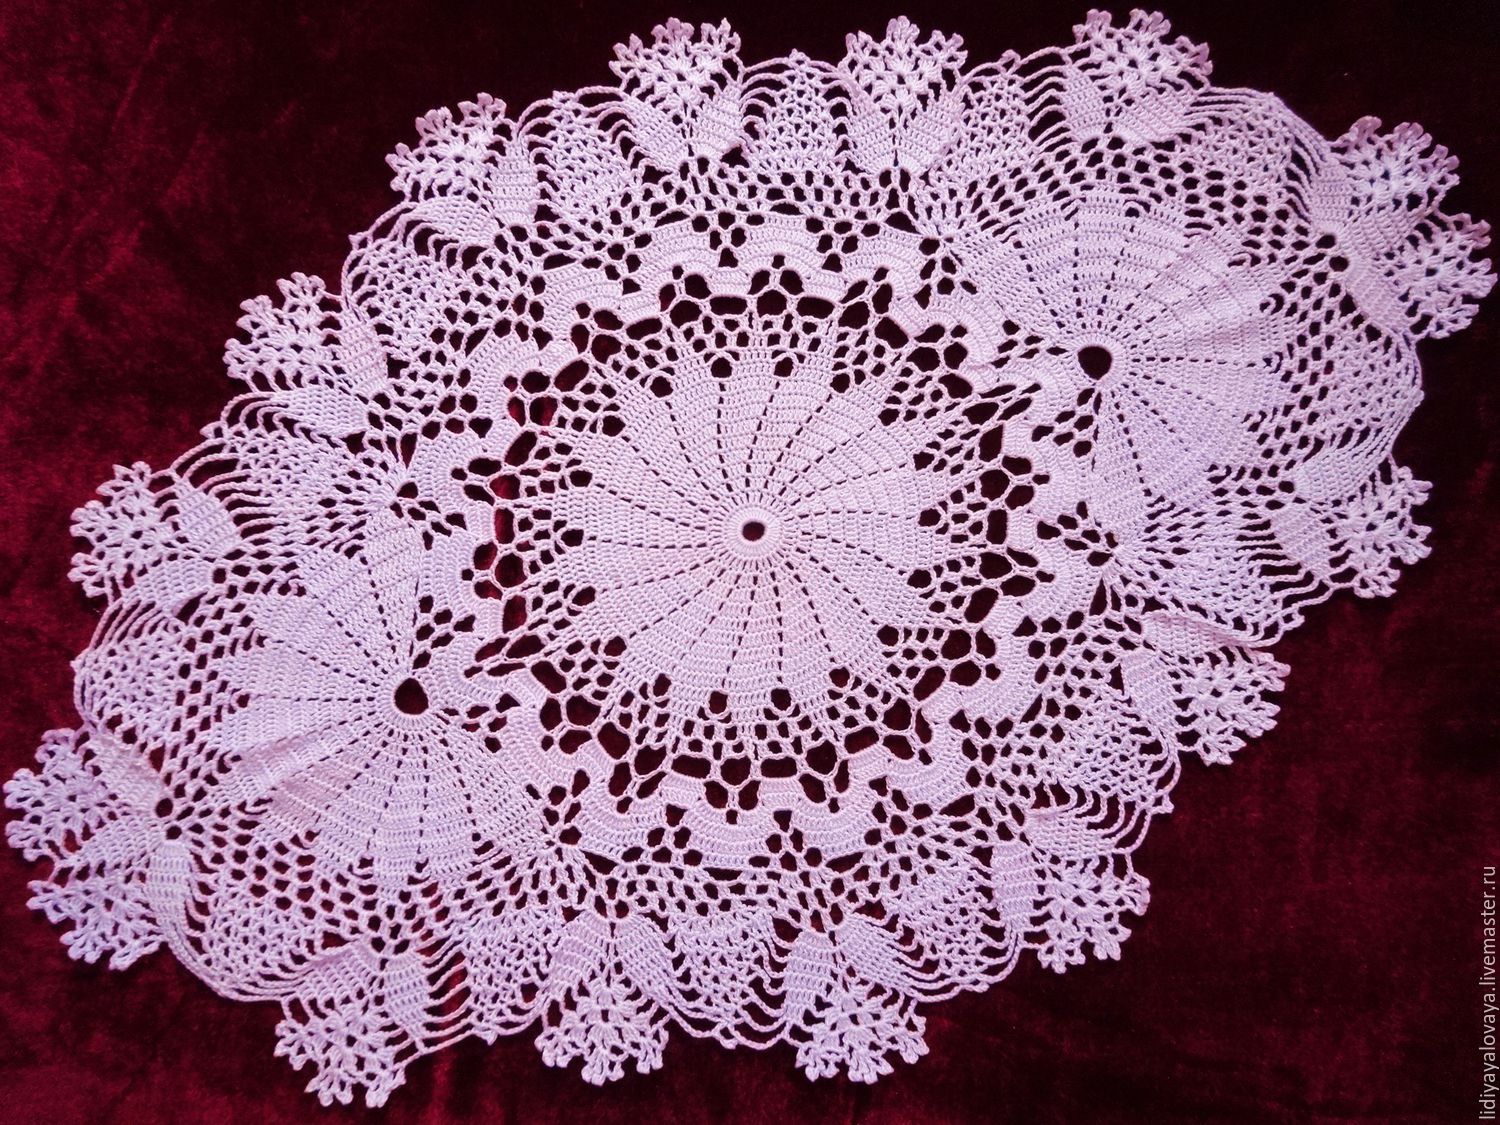 Красивейшая салфетка часть 2. Салфетки крючком Doily Crochet. МК салфетка Doily. Вязаниекручкомсалфетки. Вязаные овальные салфетки.